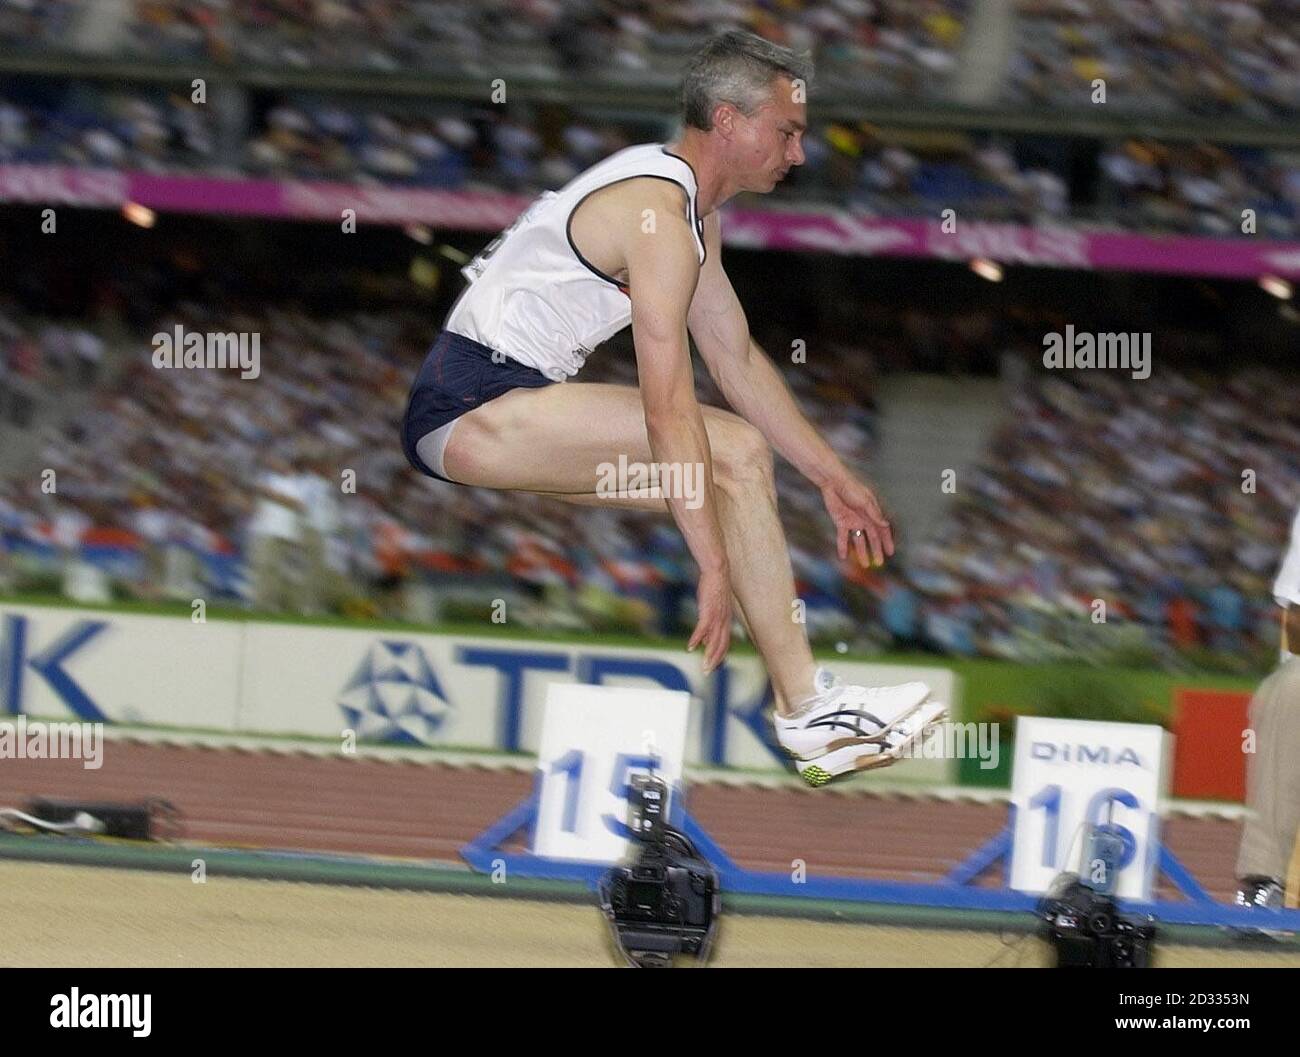 L'athlète britannique Jonathan Edwards se disputant le Triple saut aux Championnats du monde d'athlétisme à Paris, en France. Banque D'Images